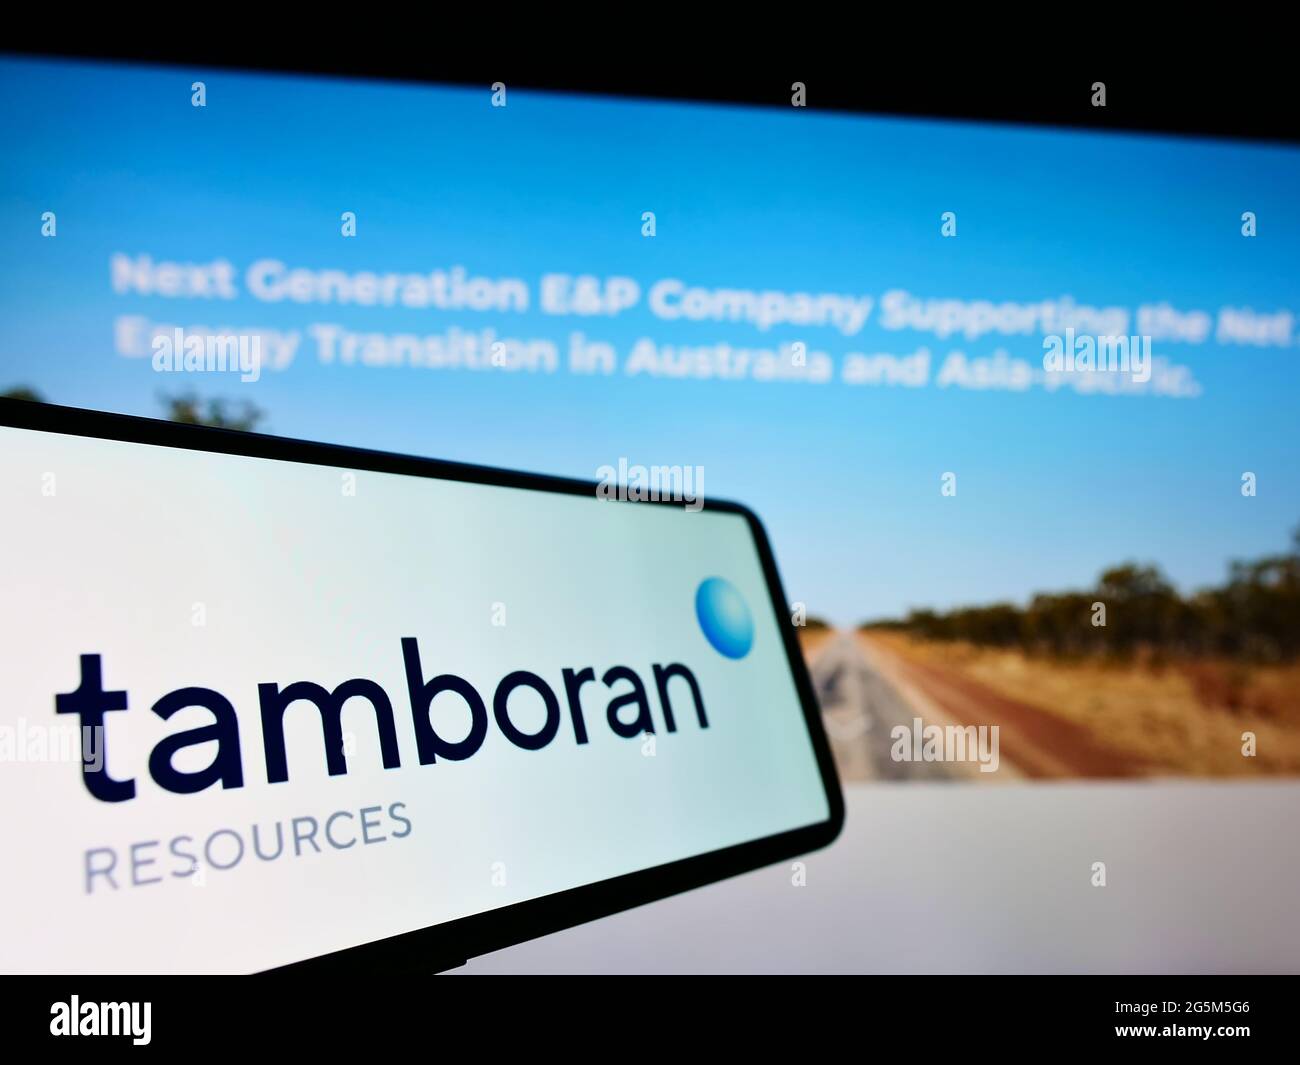 Cellulare con logo della società australiana di energia Tamboran Resources Limited sullo schermo di fronte al sito web aziendale. Mettere a fuoco il centro del display del telefono. Foto Stock